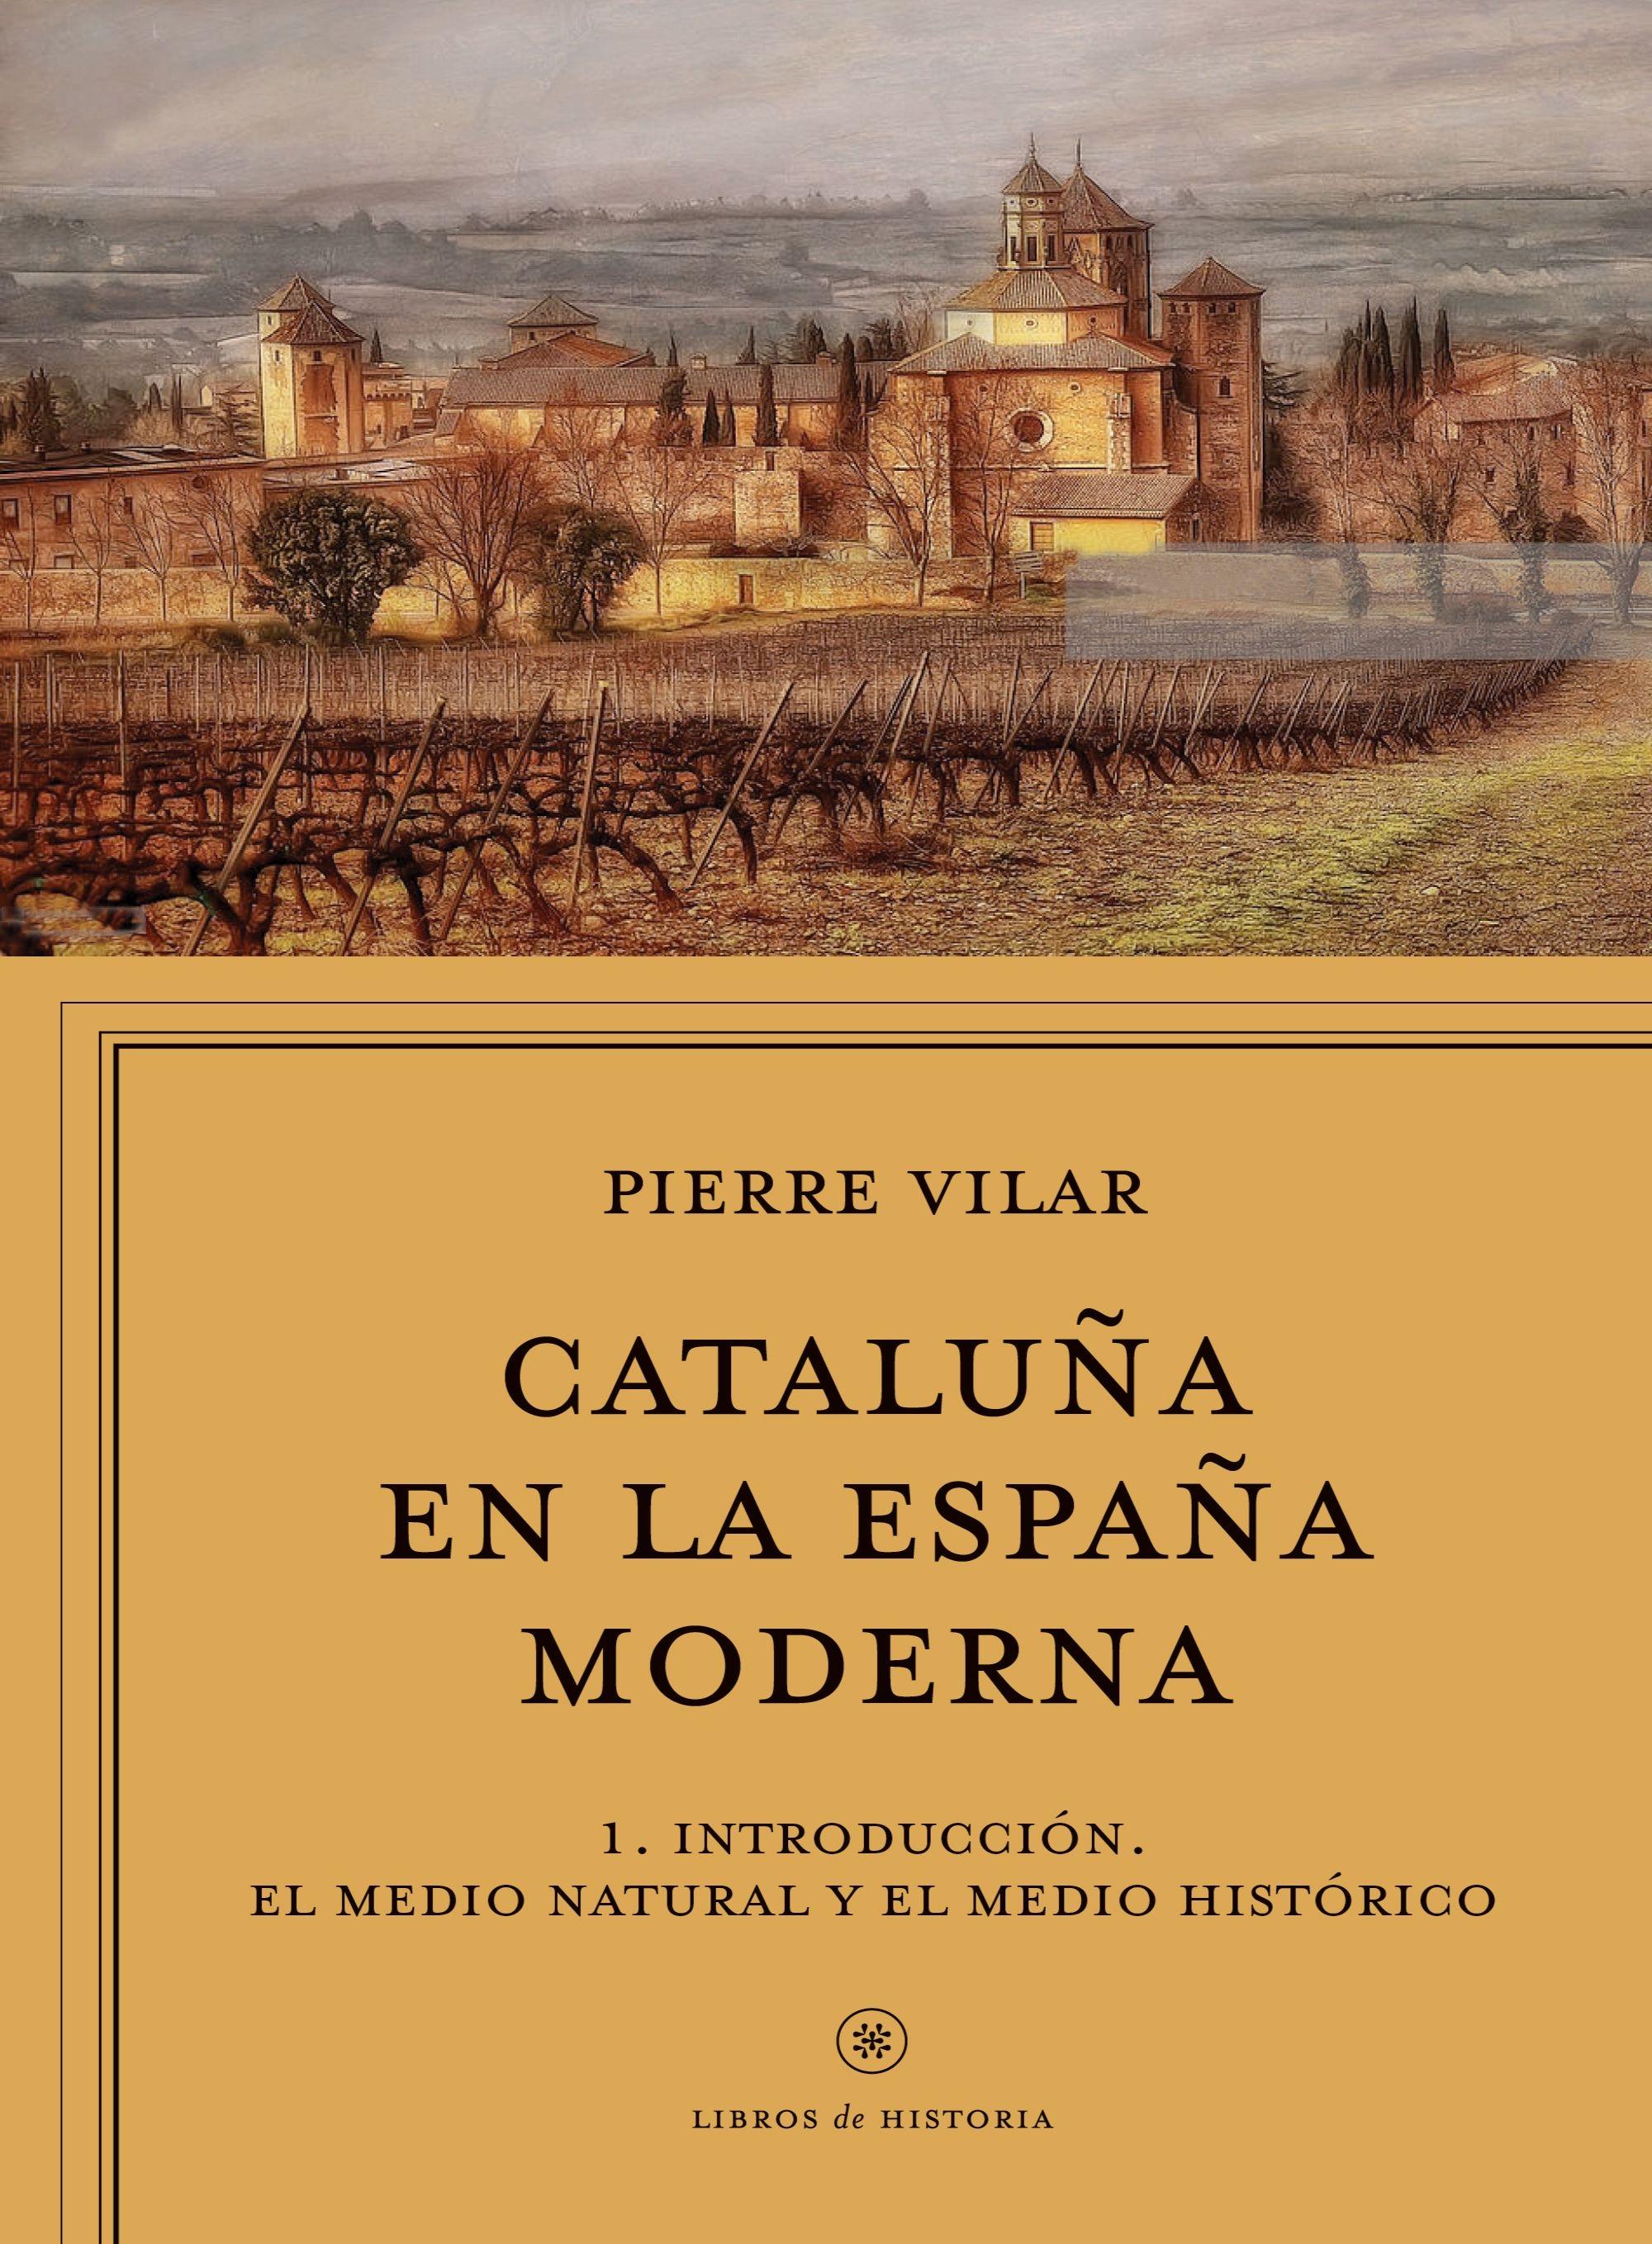 Cataluña en la España Moderna, Vol. 1 "El Medio Natural y el Medio Histórico. el Siglo Xviii: las Transformacio"